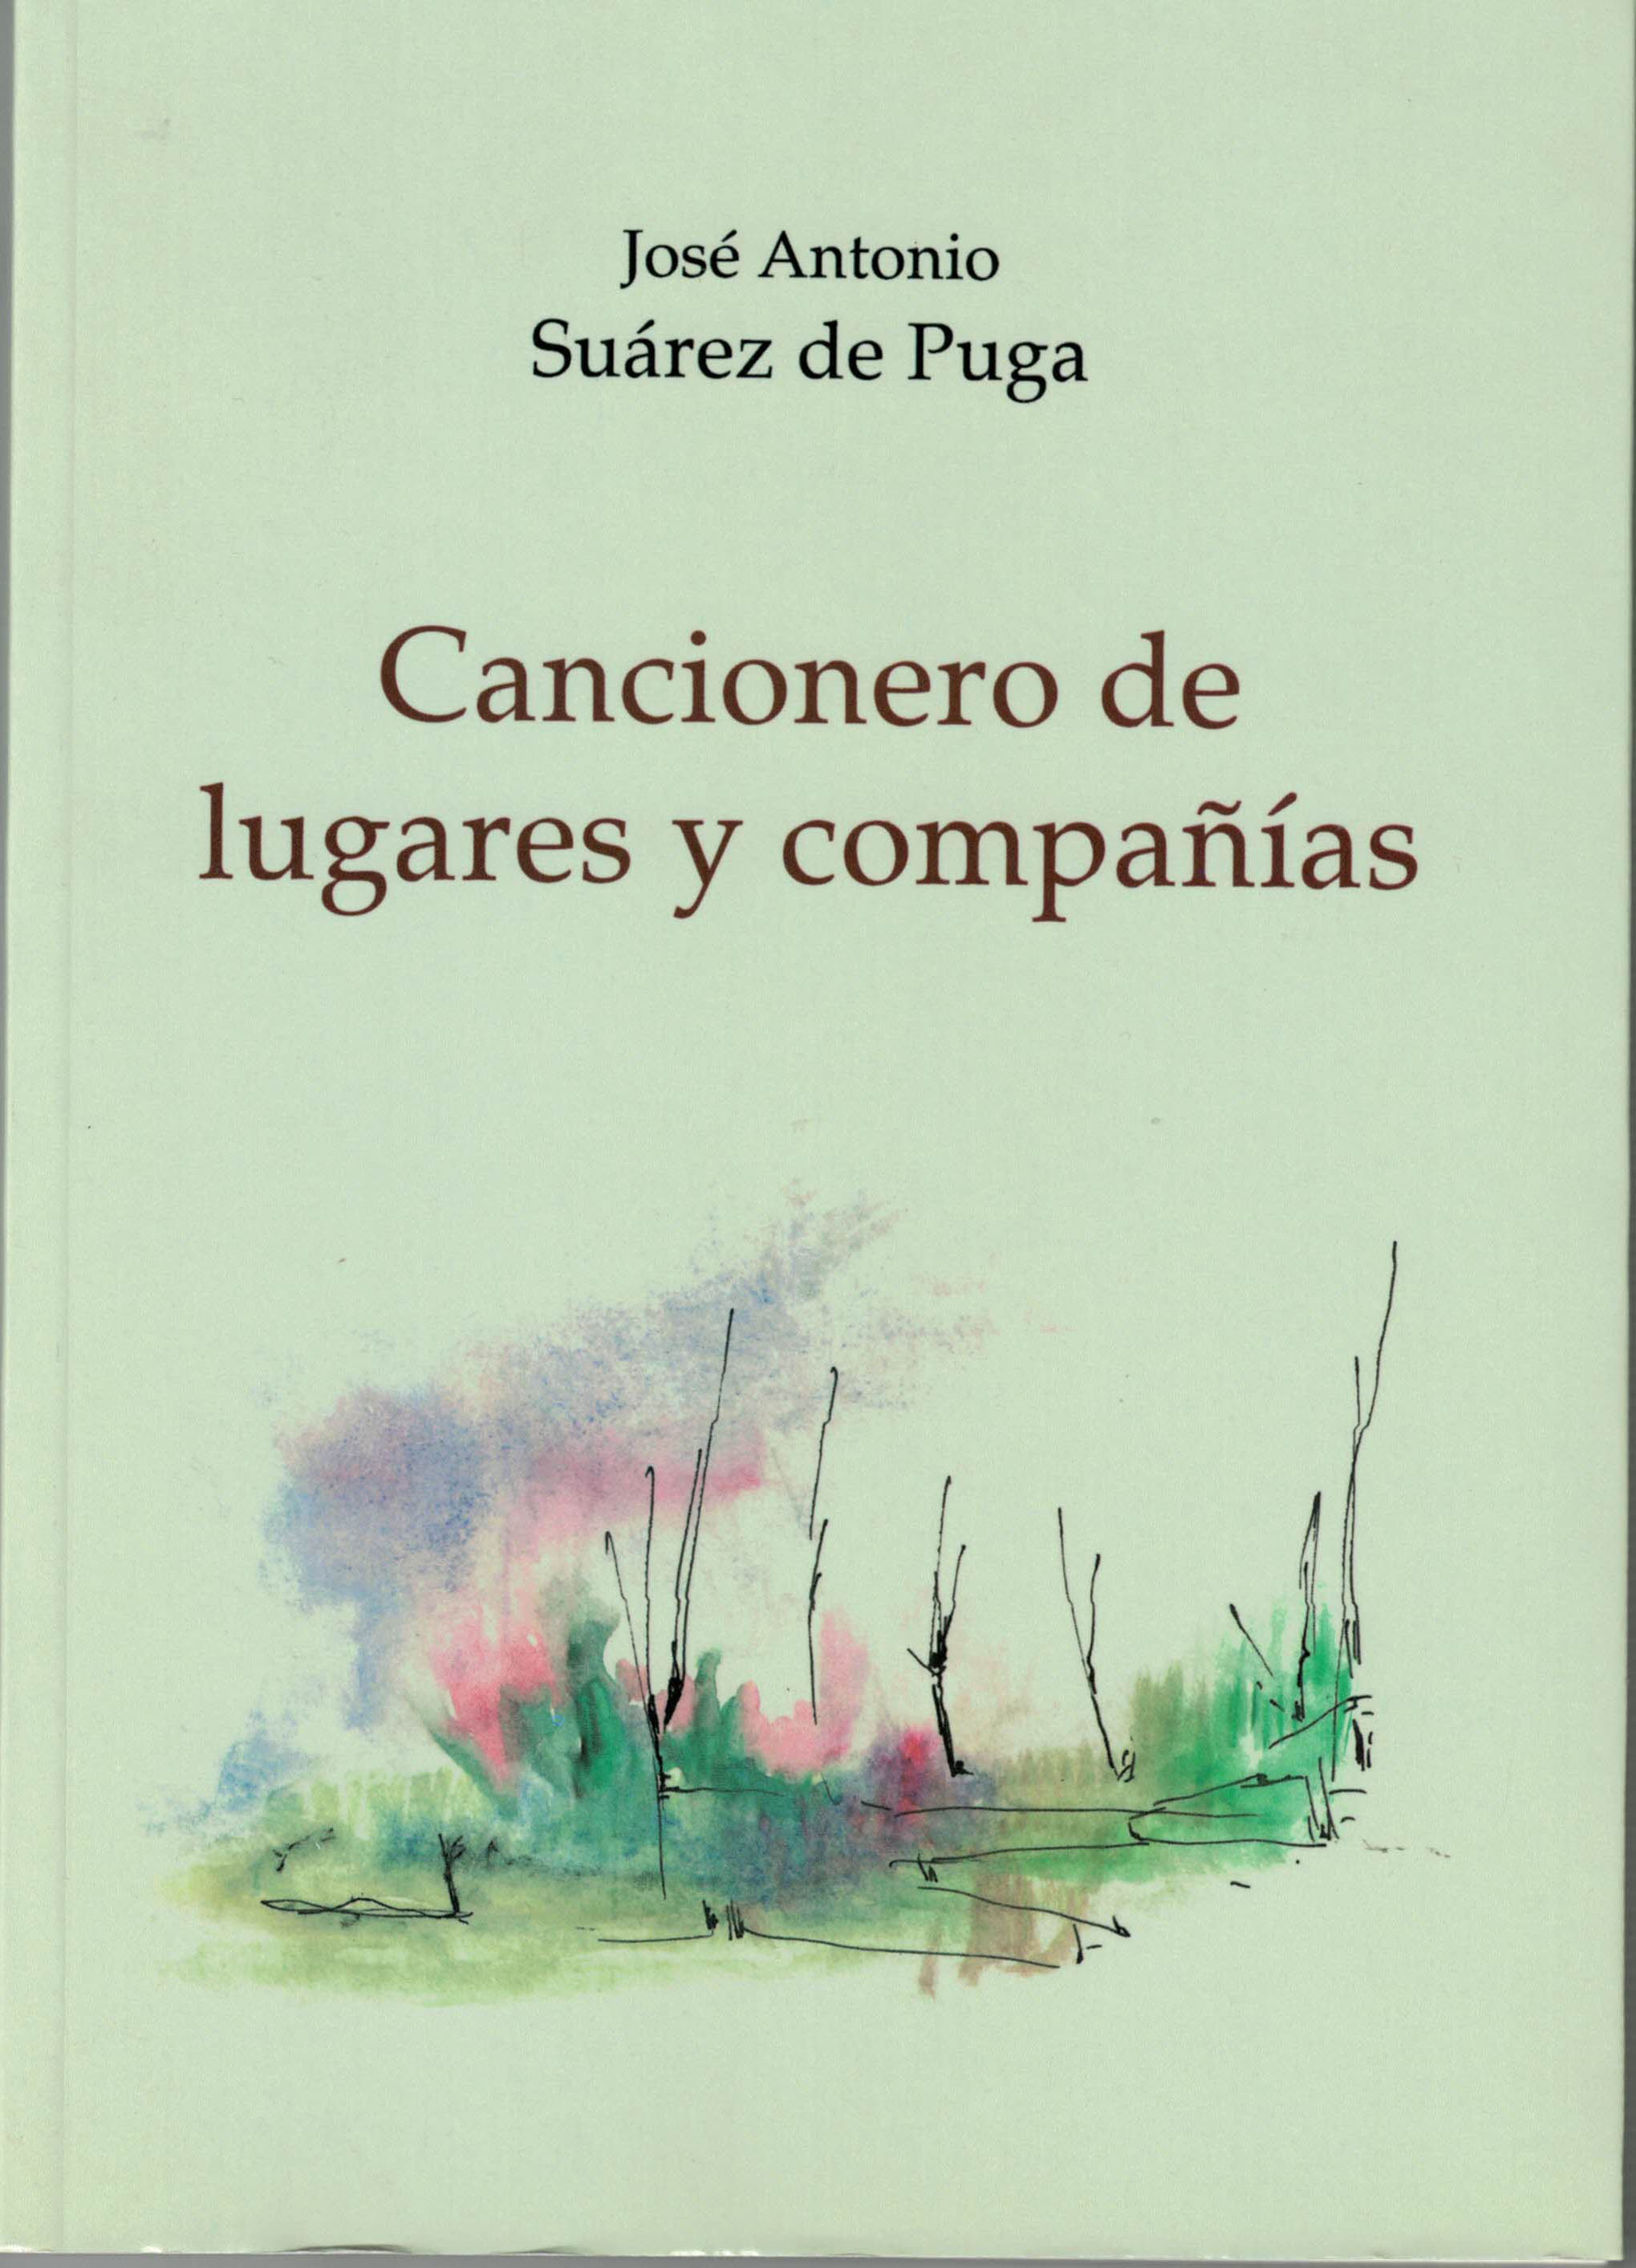 Cancionero de lugares y compañias, José Antonio Suárez de Puga